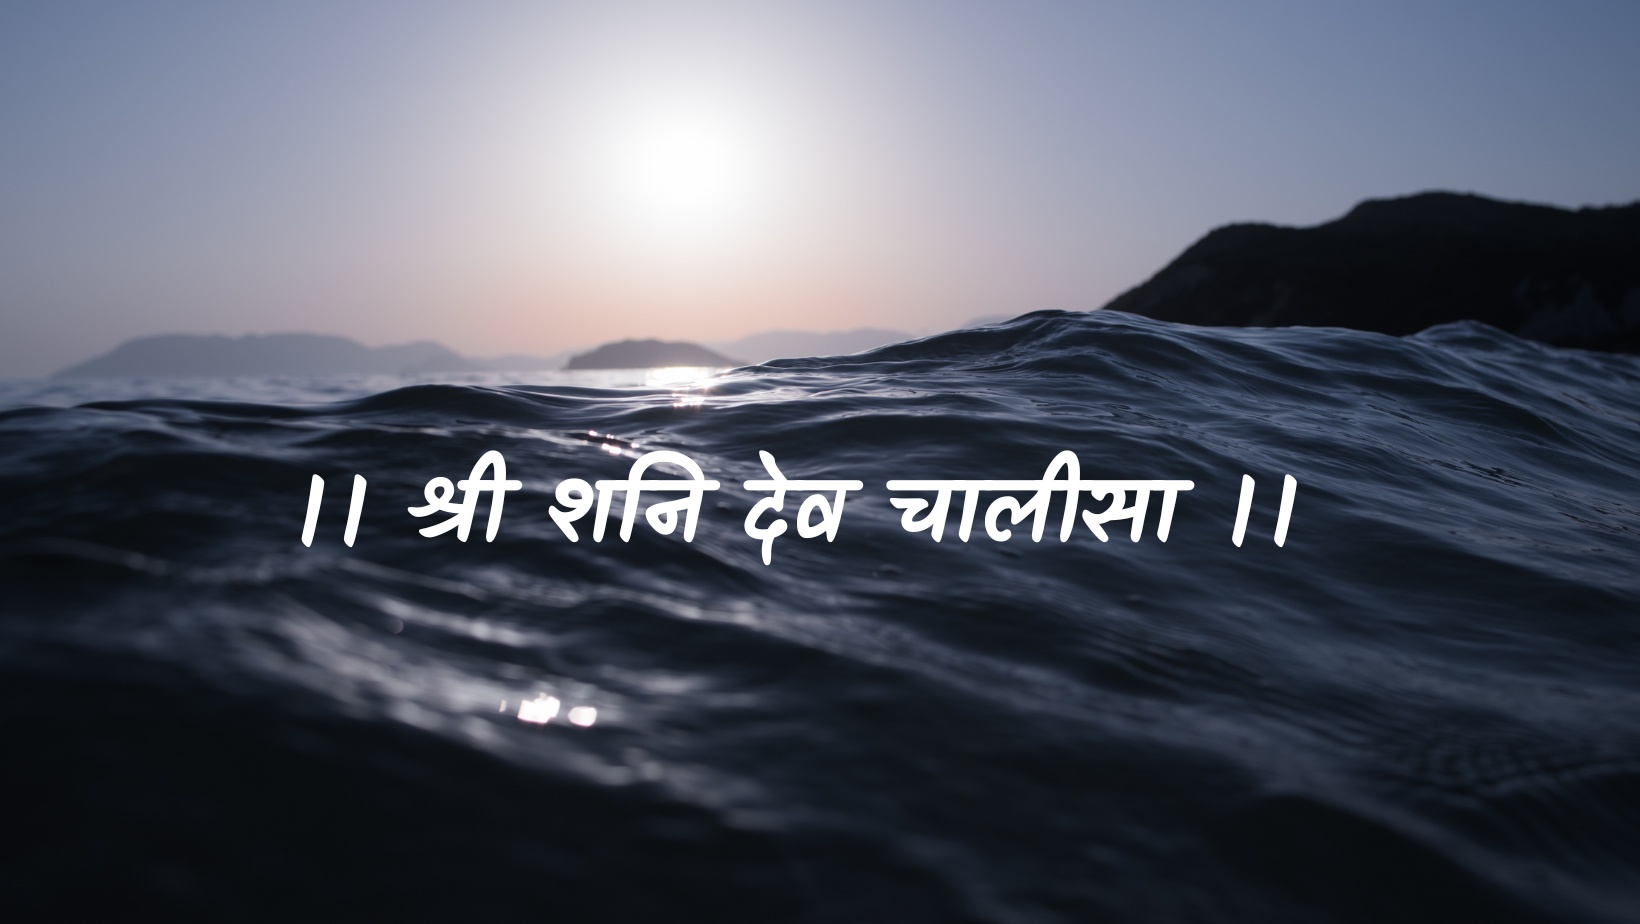 शनि देव चालीसा | Shanni dev chaleesa by विकास